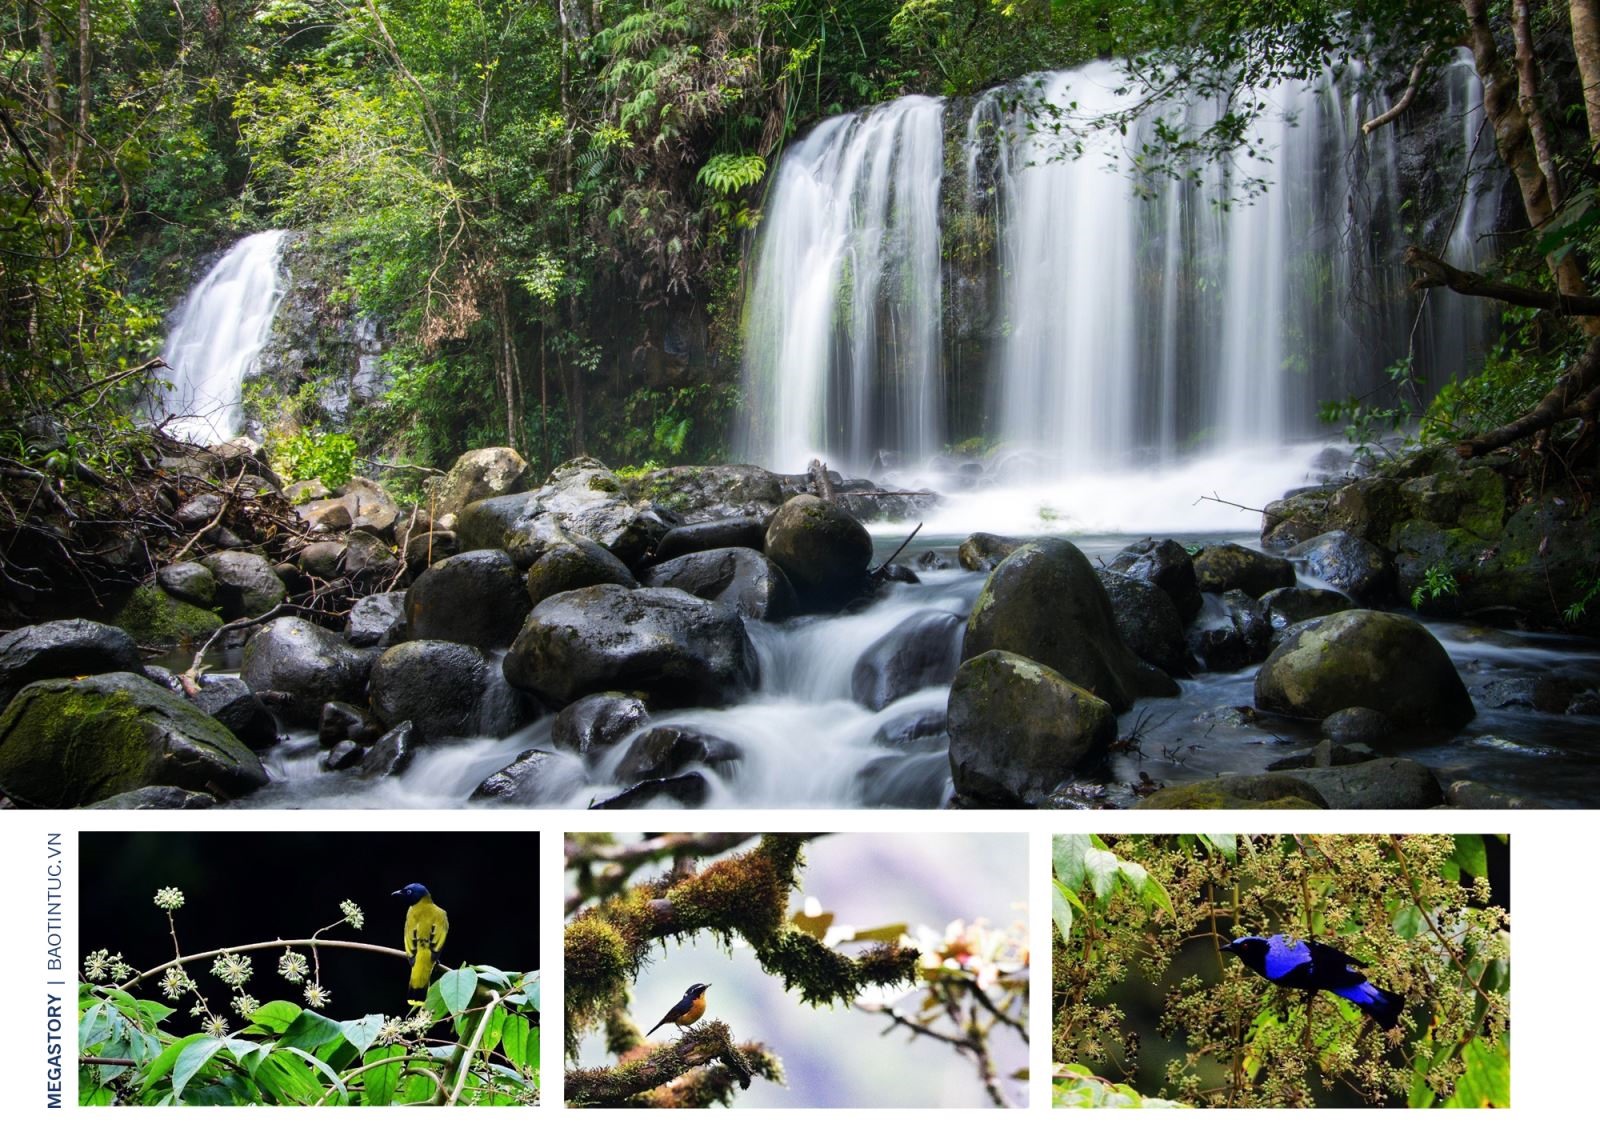 Khu du lịch núi Lang Biang; nhím bạch tạng và cầy vằn Chrotogale owstoni quý hiếm tại Vườn quốc gia Bidoup - Núi Bà.